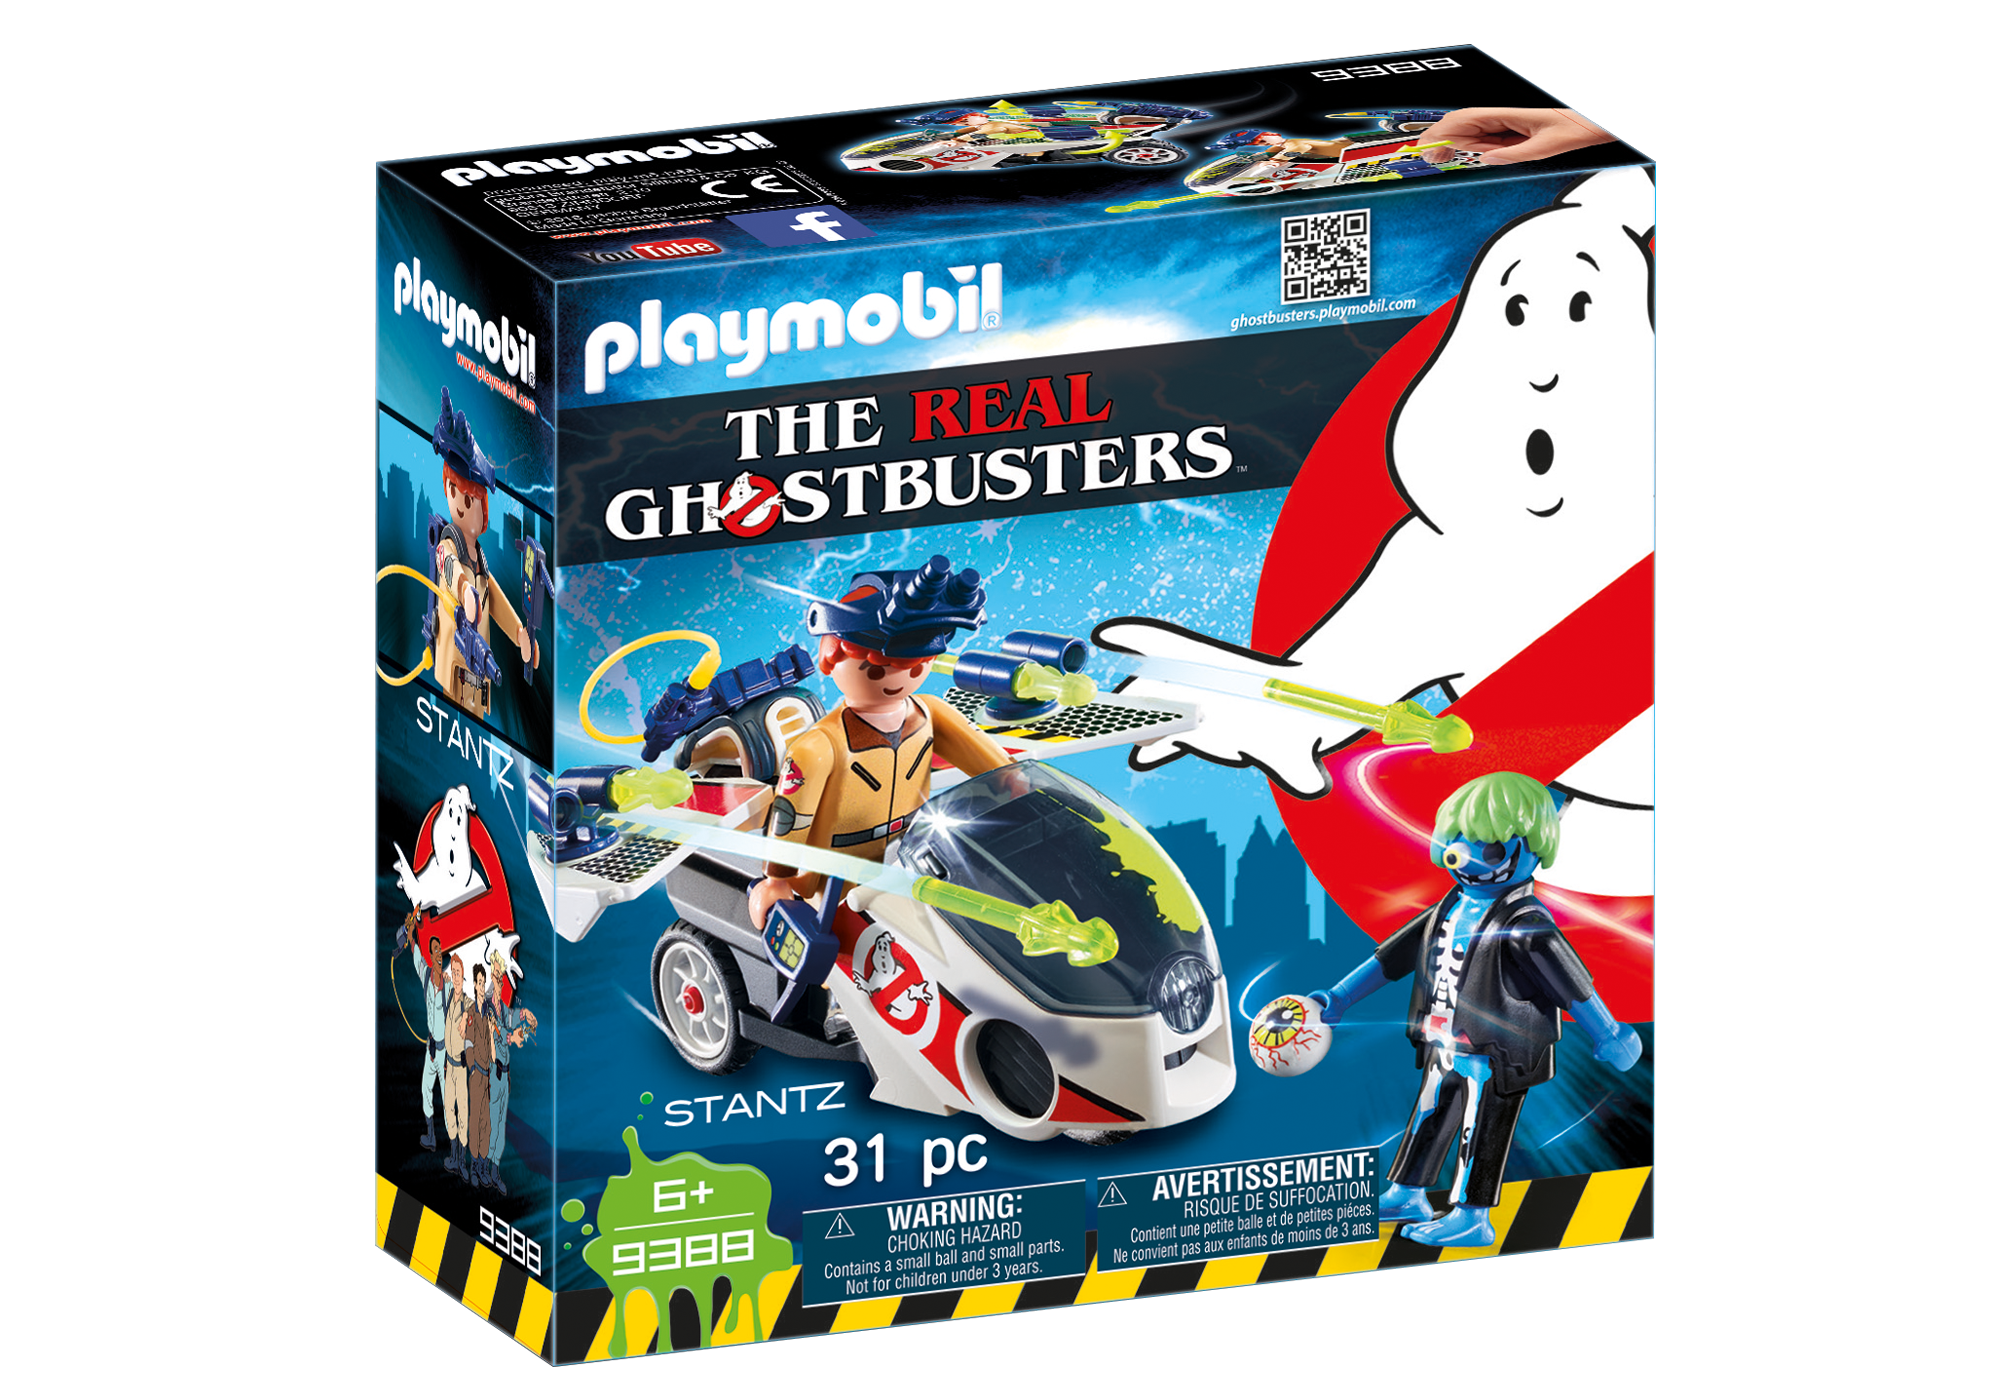 Playmobil Ghostbusters - Page 2 9388_product_box_front?locale=de-DE,de,*&$pdp_product_main_xl$